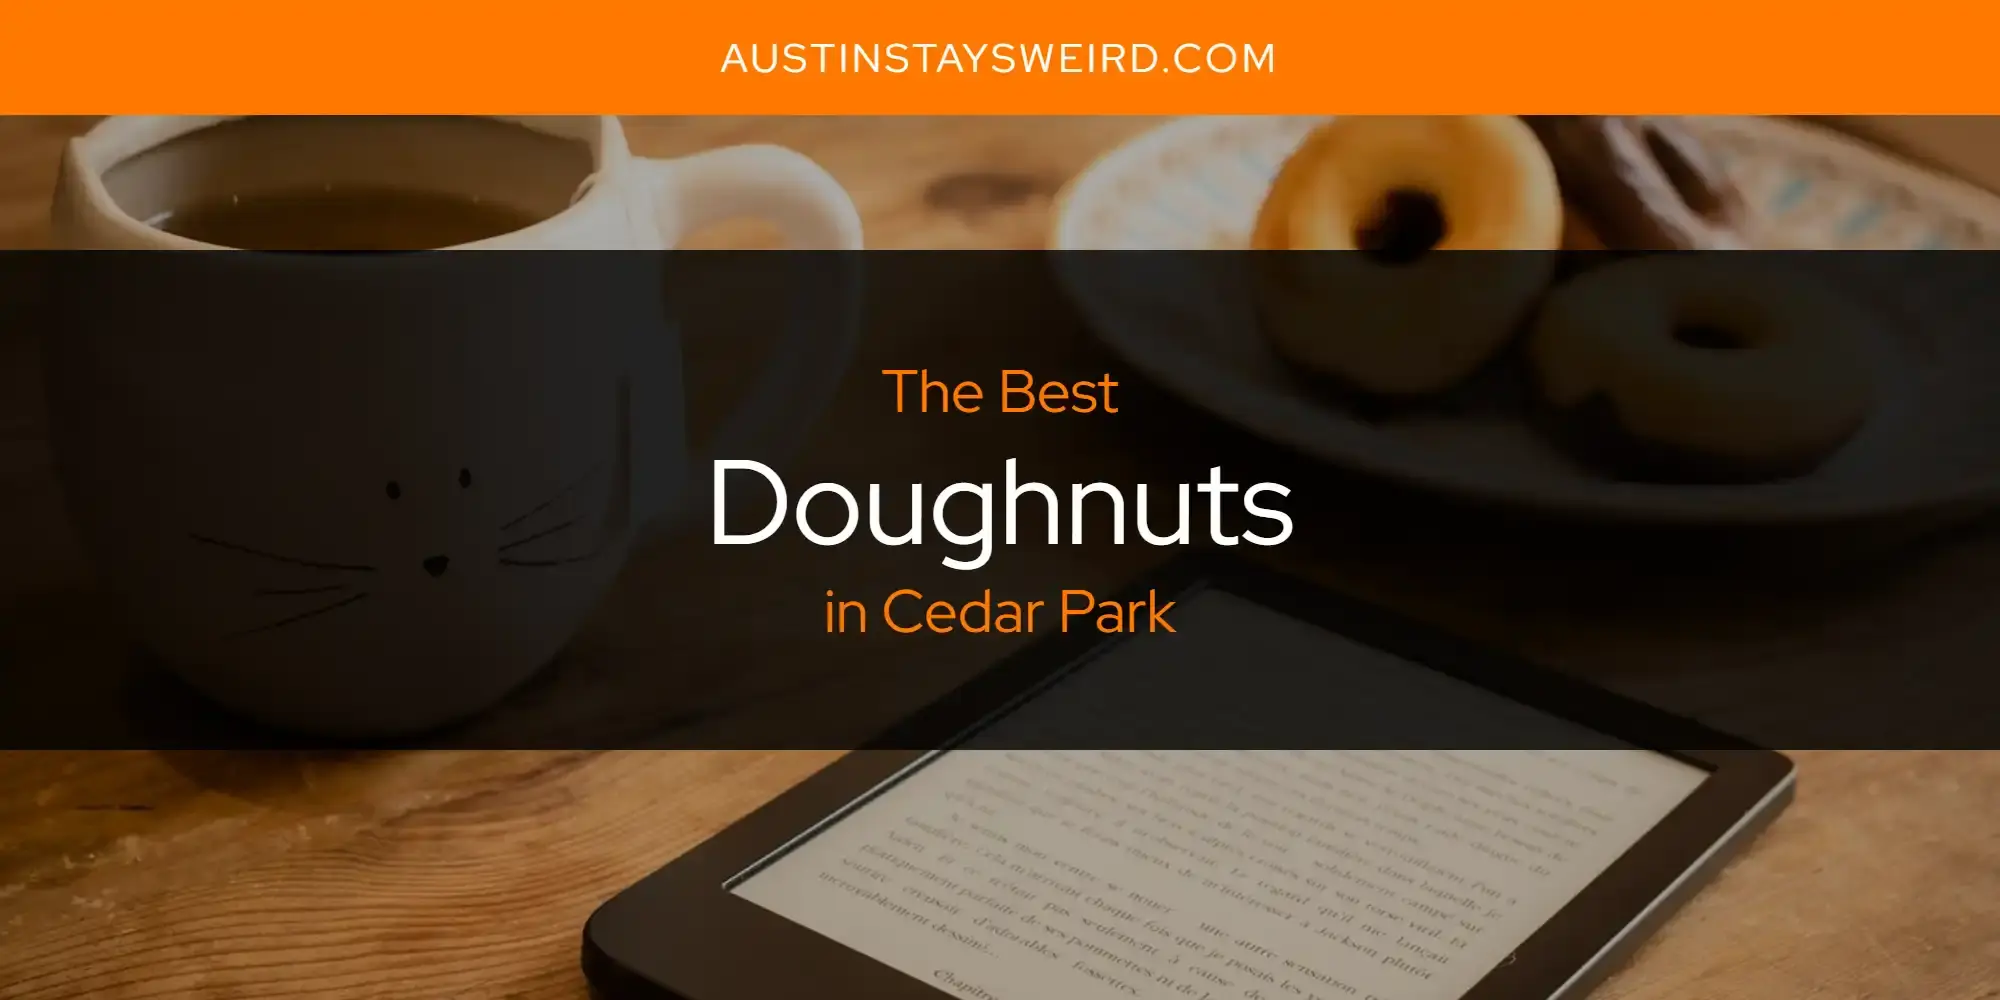 Best Doughnuts in Cedar Park? Here's the Top 8